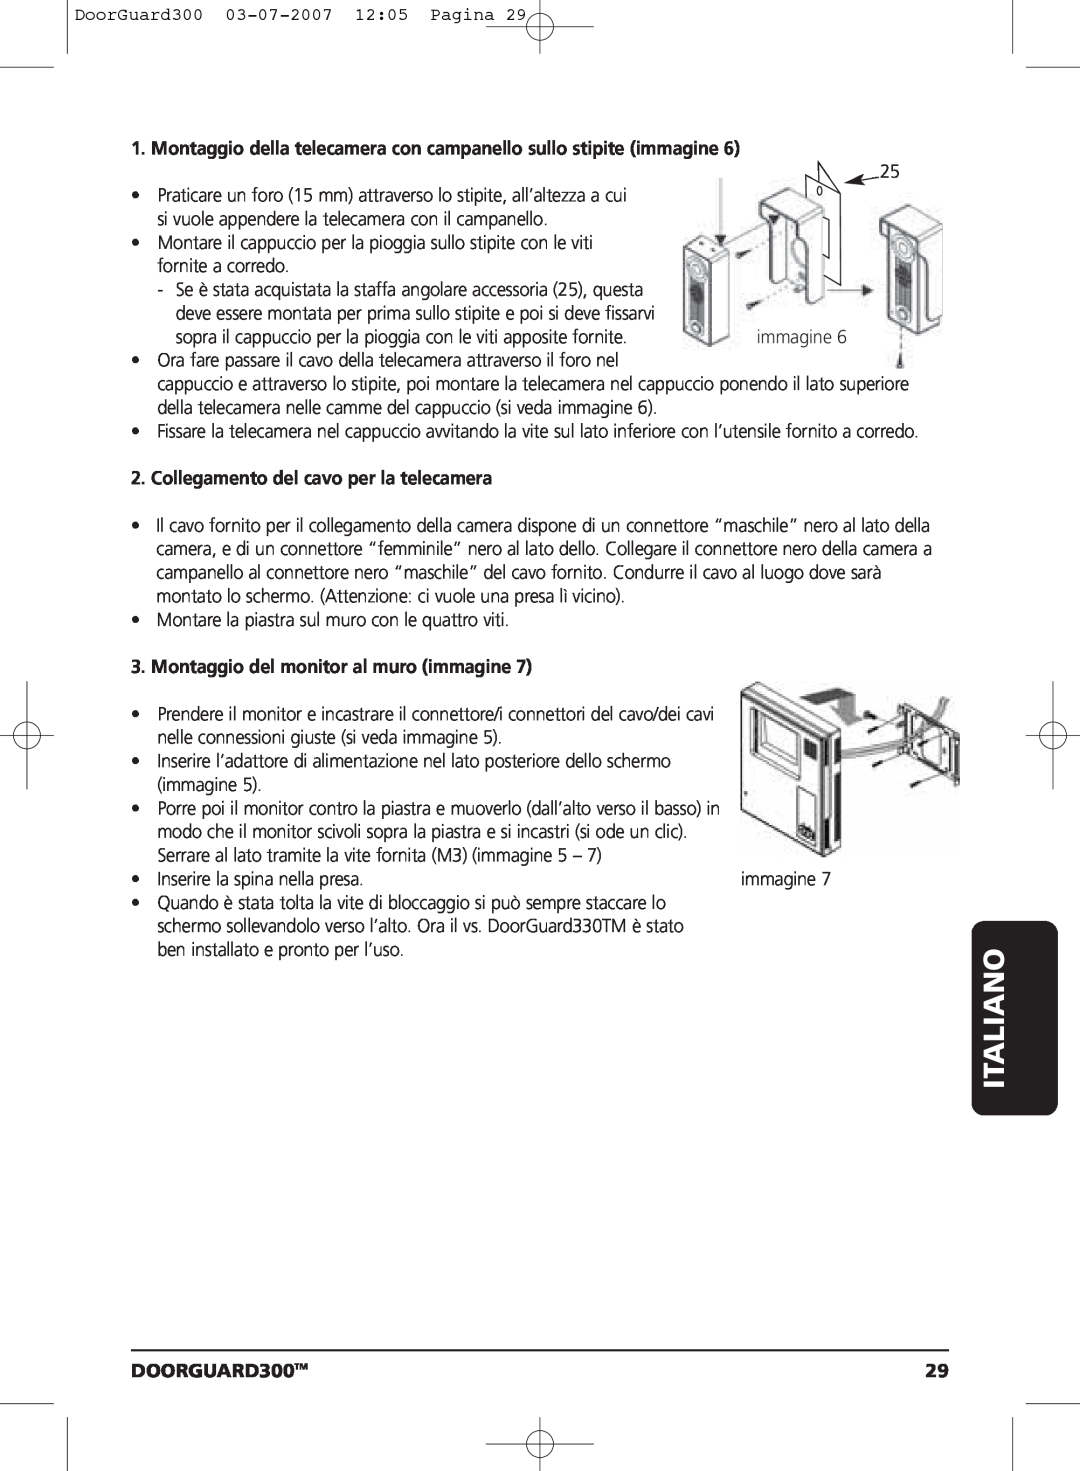 Marmitek DOORGUARD300TM user manual Montaggio della telecamera con campanello sullo stipite immagine, Italiano 